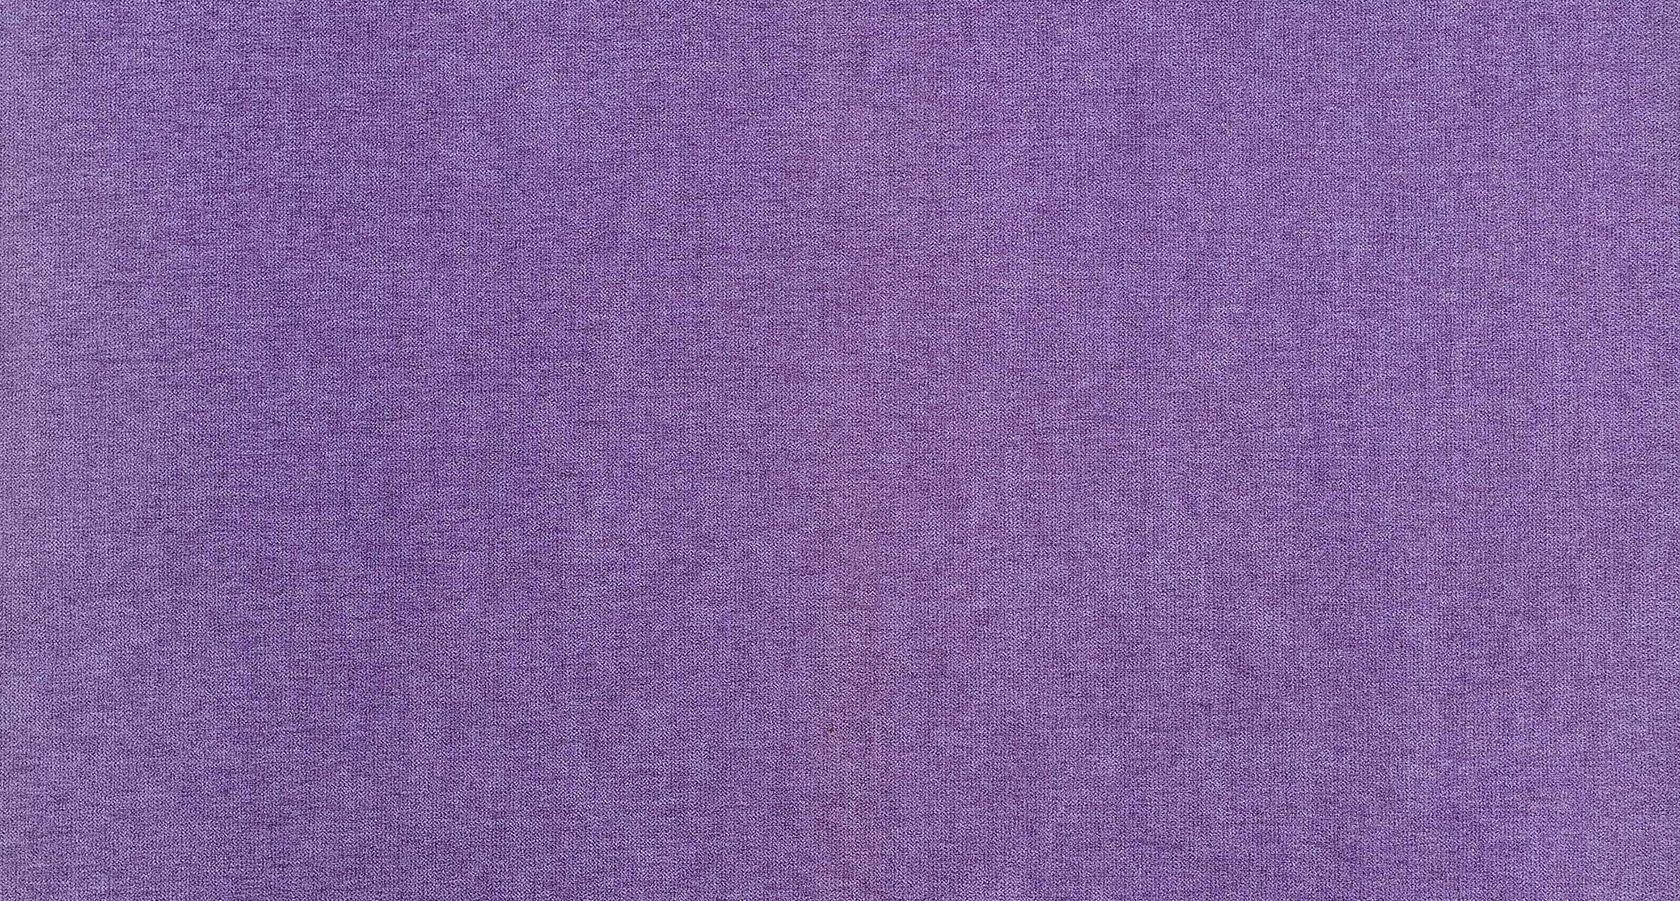 Сайт аметист ткани. Фиолетовая ткань. Текстура ткани. Сиреневая ткань для мебели. Ткань Miss.